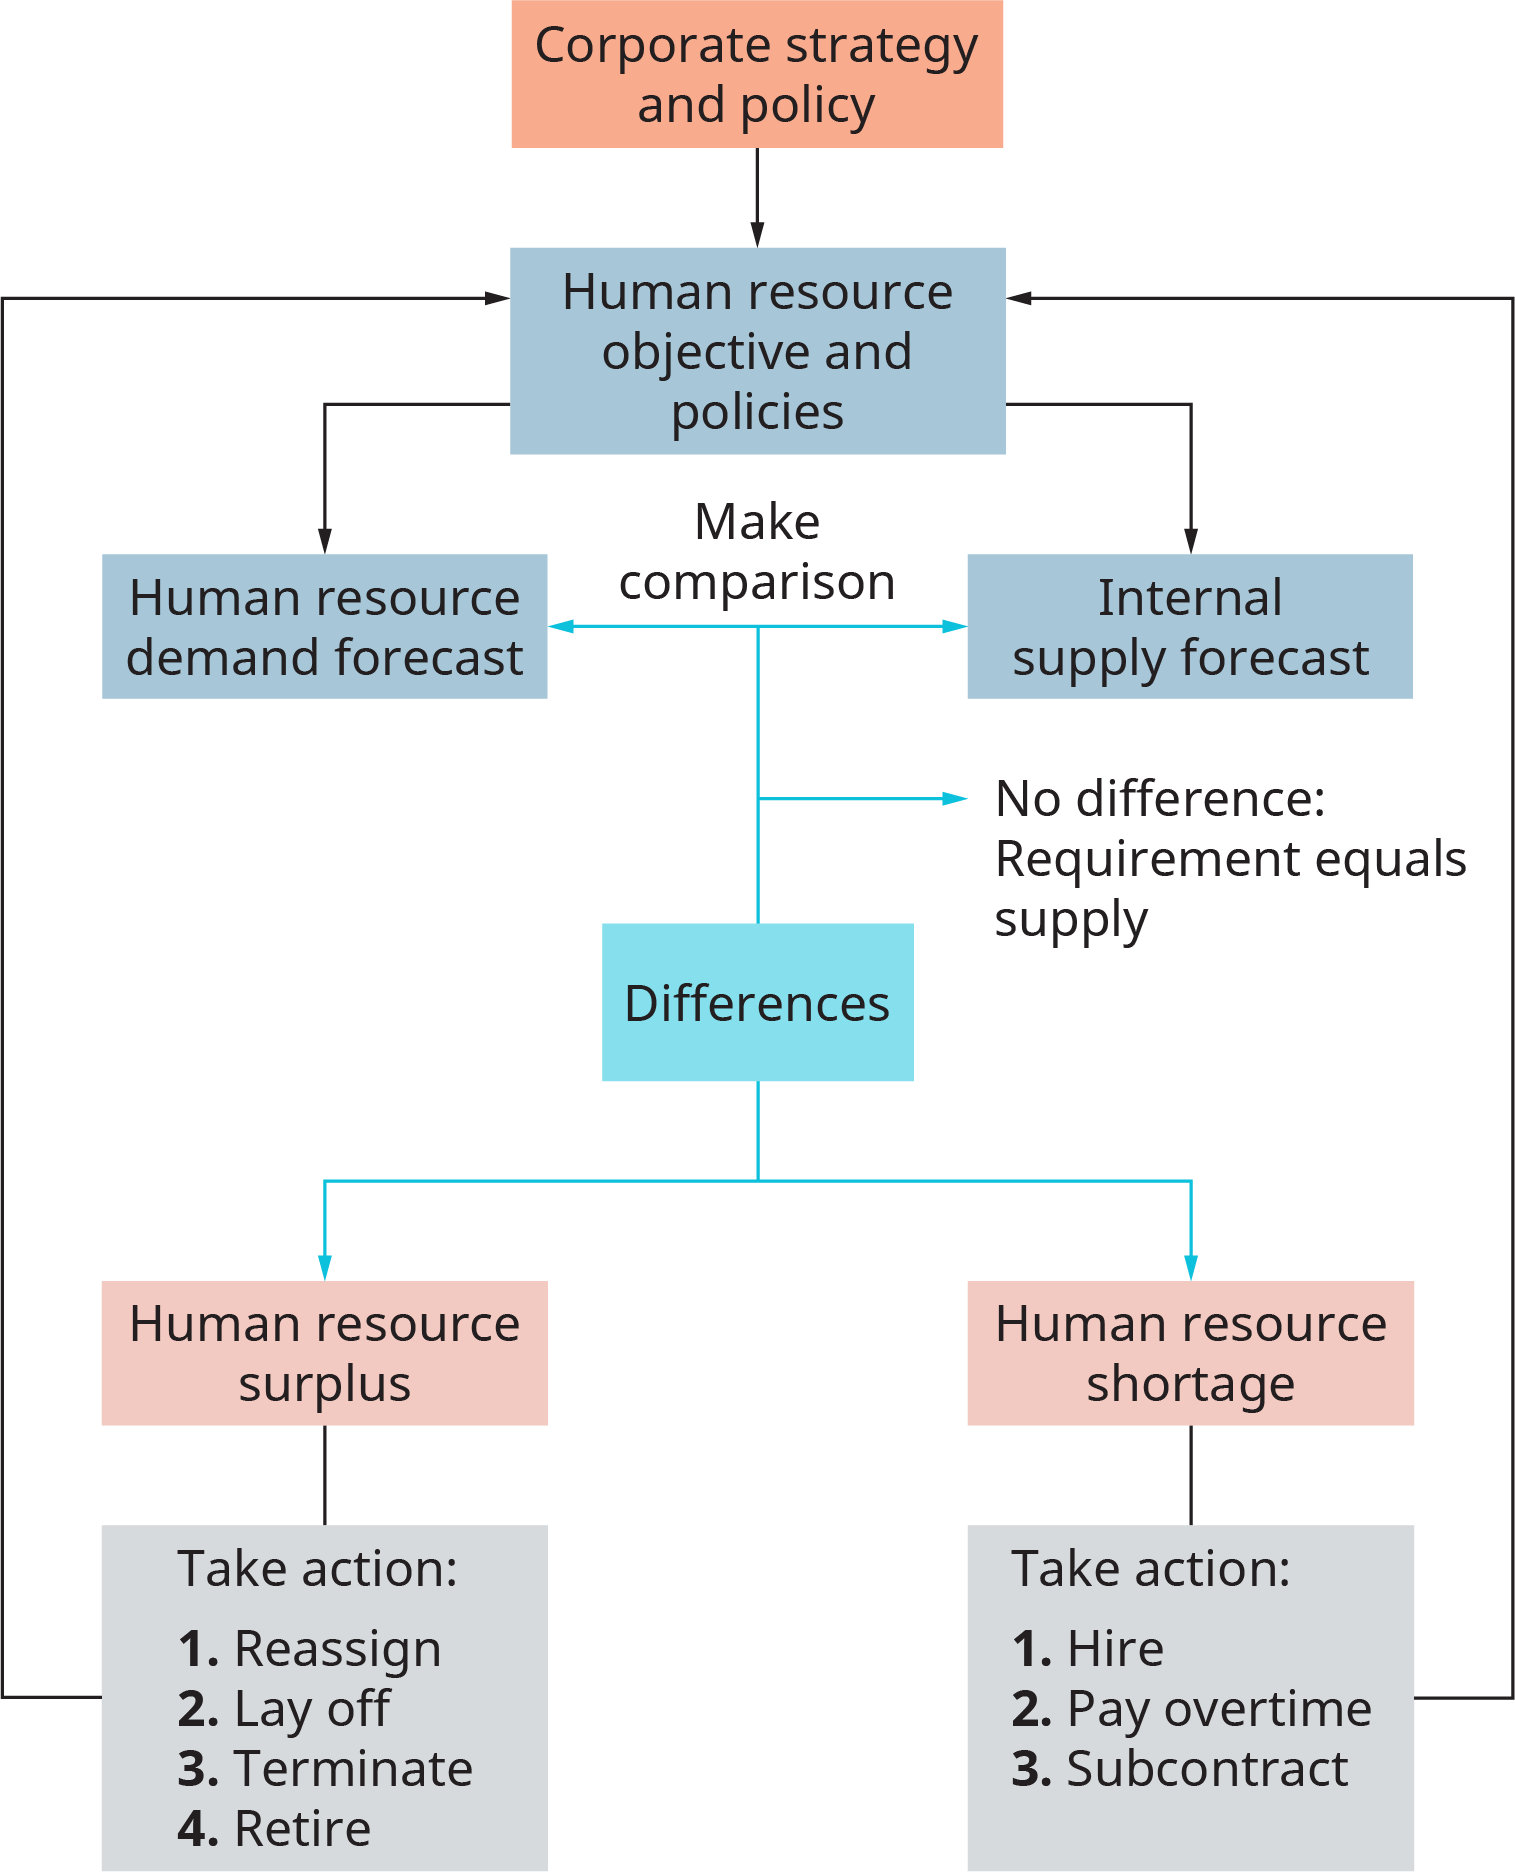 图表从企业战略和政策开始，然后流向人力资源目标和政策。 它流入两个单独的方框中，一个标记为人力资源需求预测，另一个标记为内部供应预测。 图表显示要对这两个预测进行比较。 通过这种比较，该过程进入了一个标有 “差异” 的方框。 注释上写着，如果没有区别，则需求等于供应。 由于差异，该过程分为两个单独的方框，一个标记为人力资源过剩，另一个标记为人力资源短缺。 该流程从人力资源剩余中流入一个标有 “采取行动” 的框中。1，重新分配。2 裁员。3 终止。4，退休。 由于人力资源短缺，流程流入一个标有 “采取行动” 的方框中。1，招聘。2，支付加班费。3，分包合同。 该流程从 “采取行动” 框中流回到 “人力资源目标和政策” 框中。